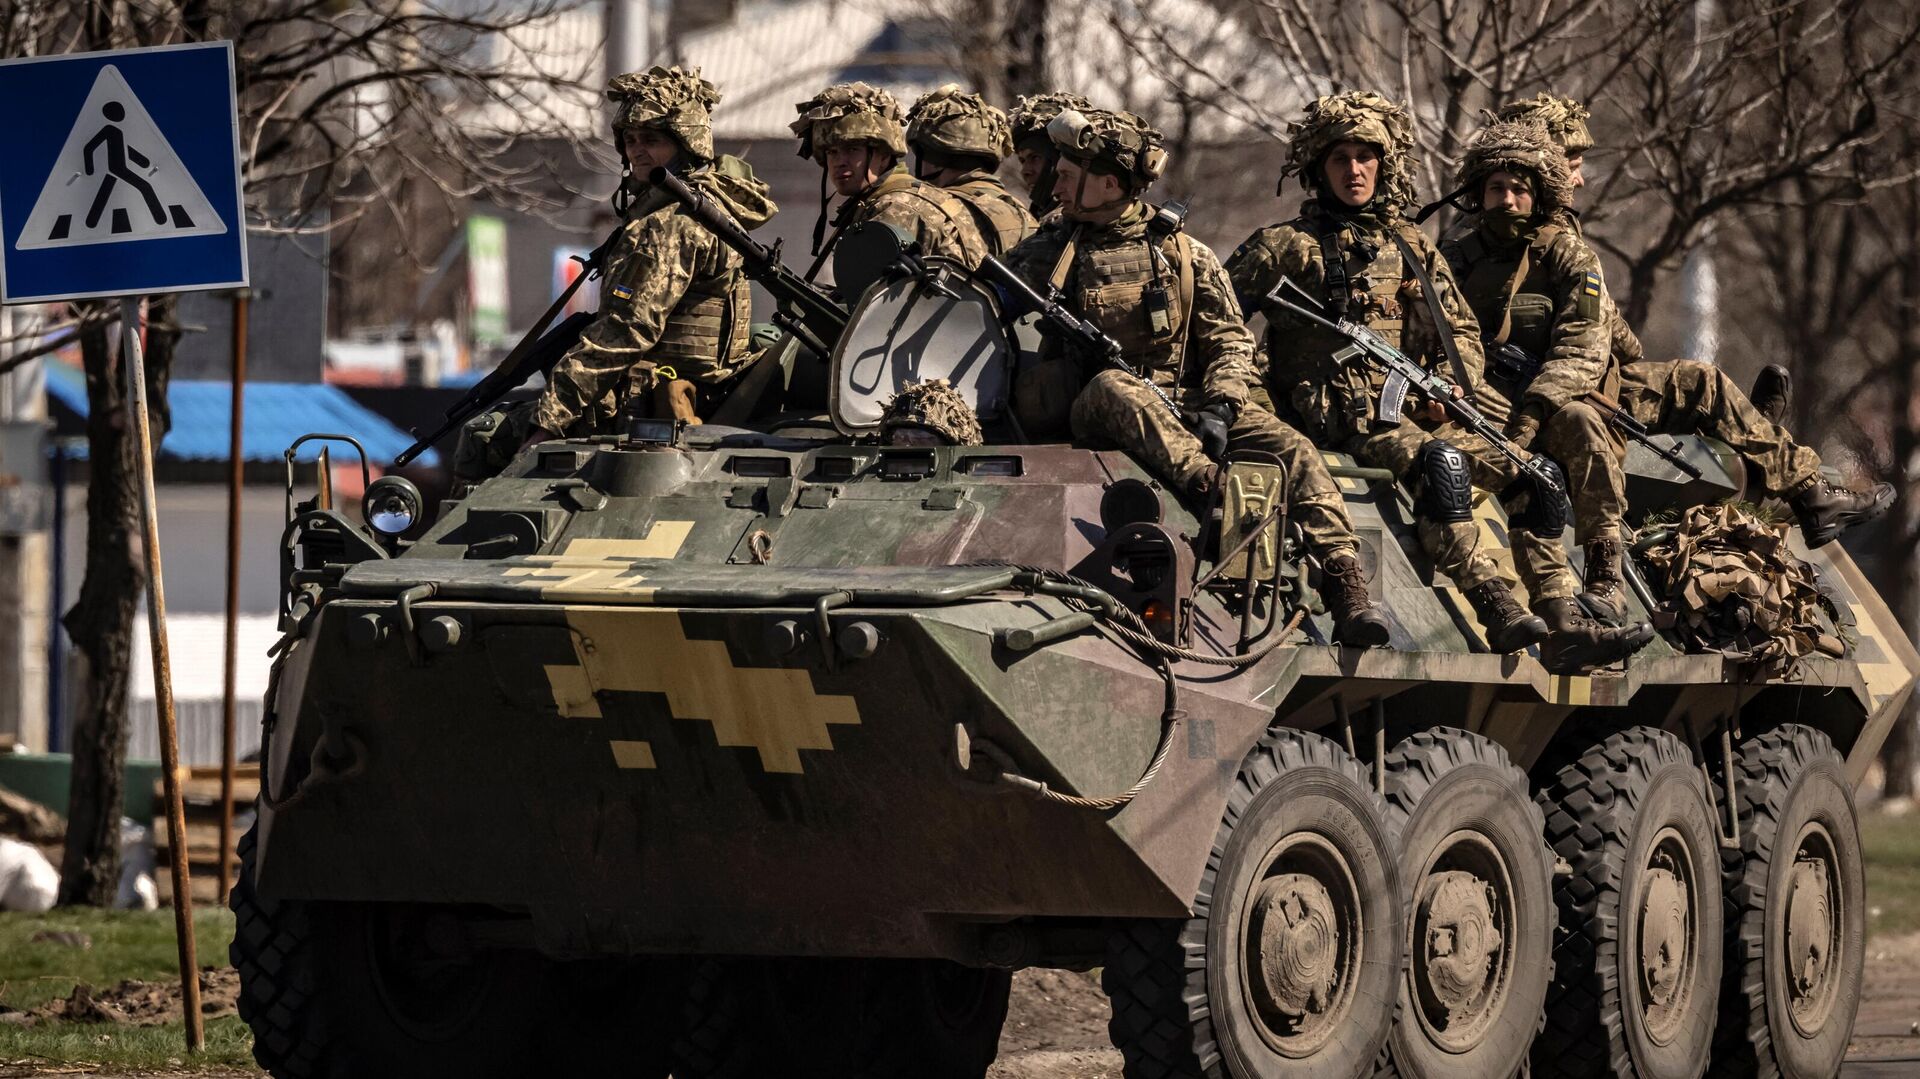 Украинские солдаты сидят на бронированной военной машине в городе Северодонецк, Донбасс, 7 апреля 2022 года - Sputnik Узбекистан, 1920, 20.05.2022